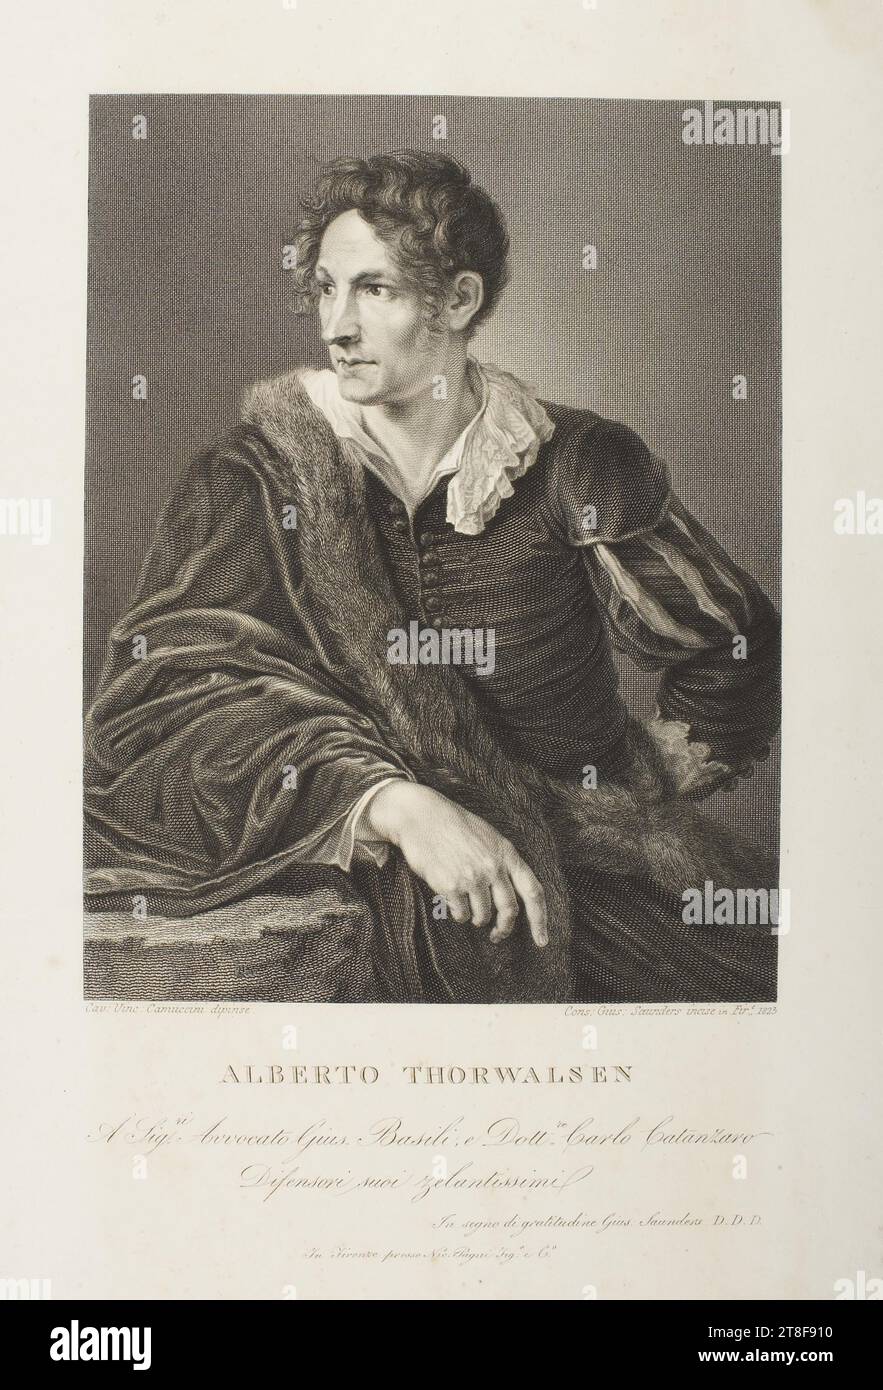 Portrait de Thorvaldsen, Joseph Saunders, 1773-1845, 1823, Art graphique, gravure sur cuivre, papier, couleur, encre d'imprimante, gravure sur cuivre, Printet, hauteur (format de la plaque) 310 mm, hauteur (format du papier) 312 mm, largeur (format de la plaque) 220 mm, largeur (format du papier) 235 mm, Cav : VINC : Camuccini dipense. Contre : Gius : Saunders incisi in Fire., 1823, ALBERTO THORWALDSEN, A. SIG.ri Avvocato GUIs. Basili, e Dolt.re Carlo Catanzaro, Difensori suoi zelantissimi, in segno di gratidudine Gius : Saunders D.D.D., in Firenze presso NIC. Pagni SIG.o e G.o, Design graphique, européen Banque D'Images